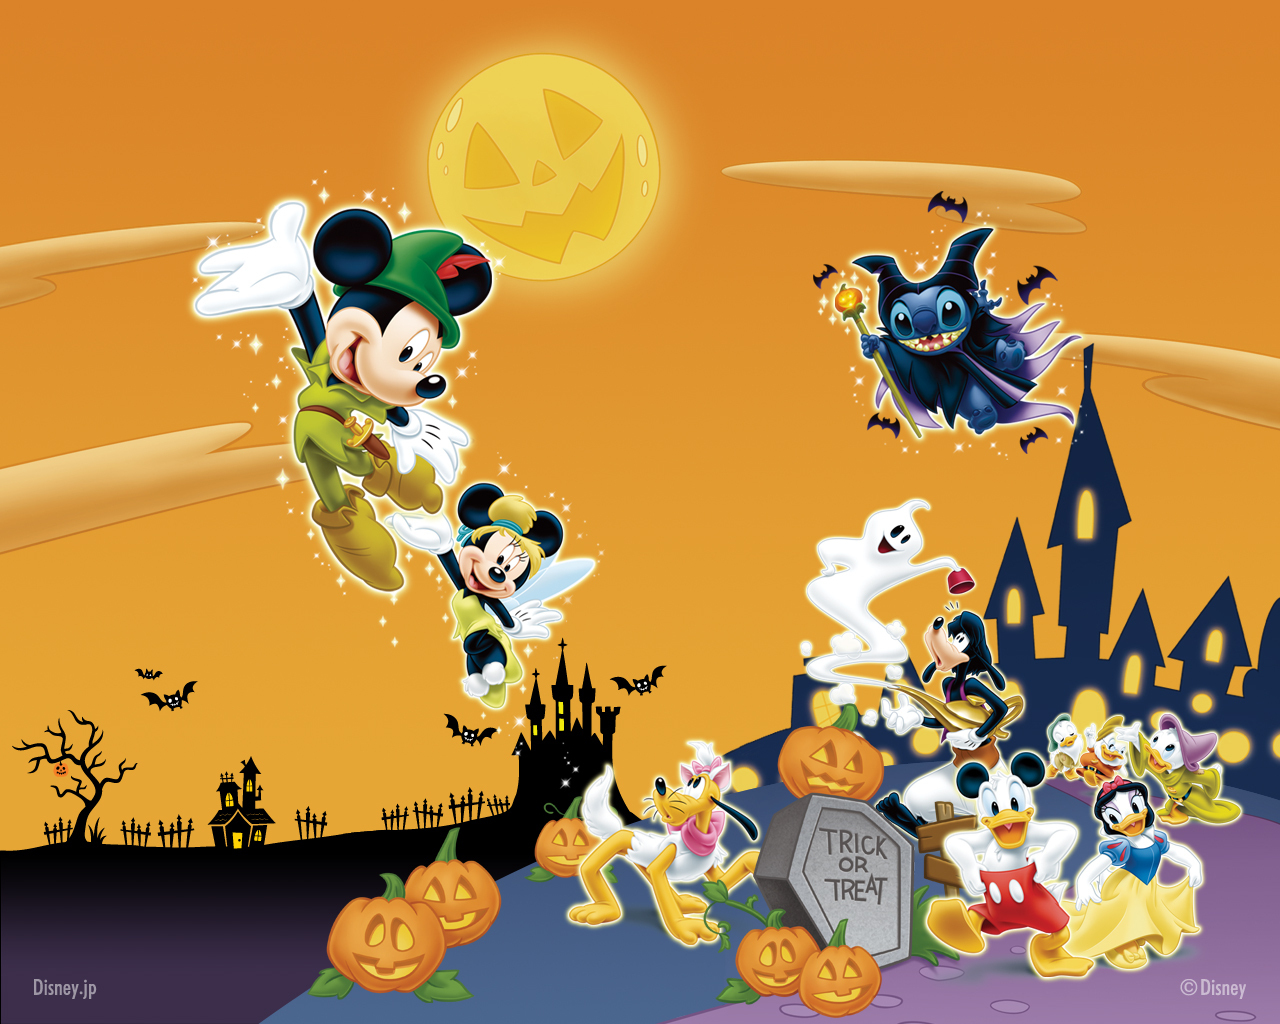 Happy Halloween Wallpaper For Disney S Fan